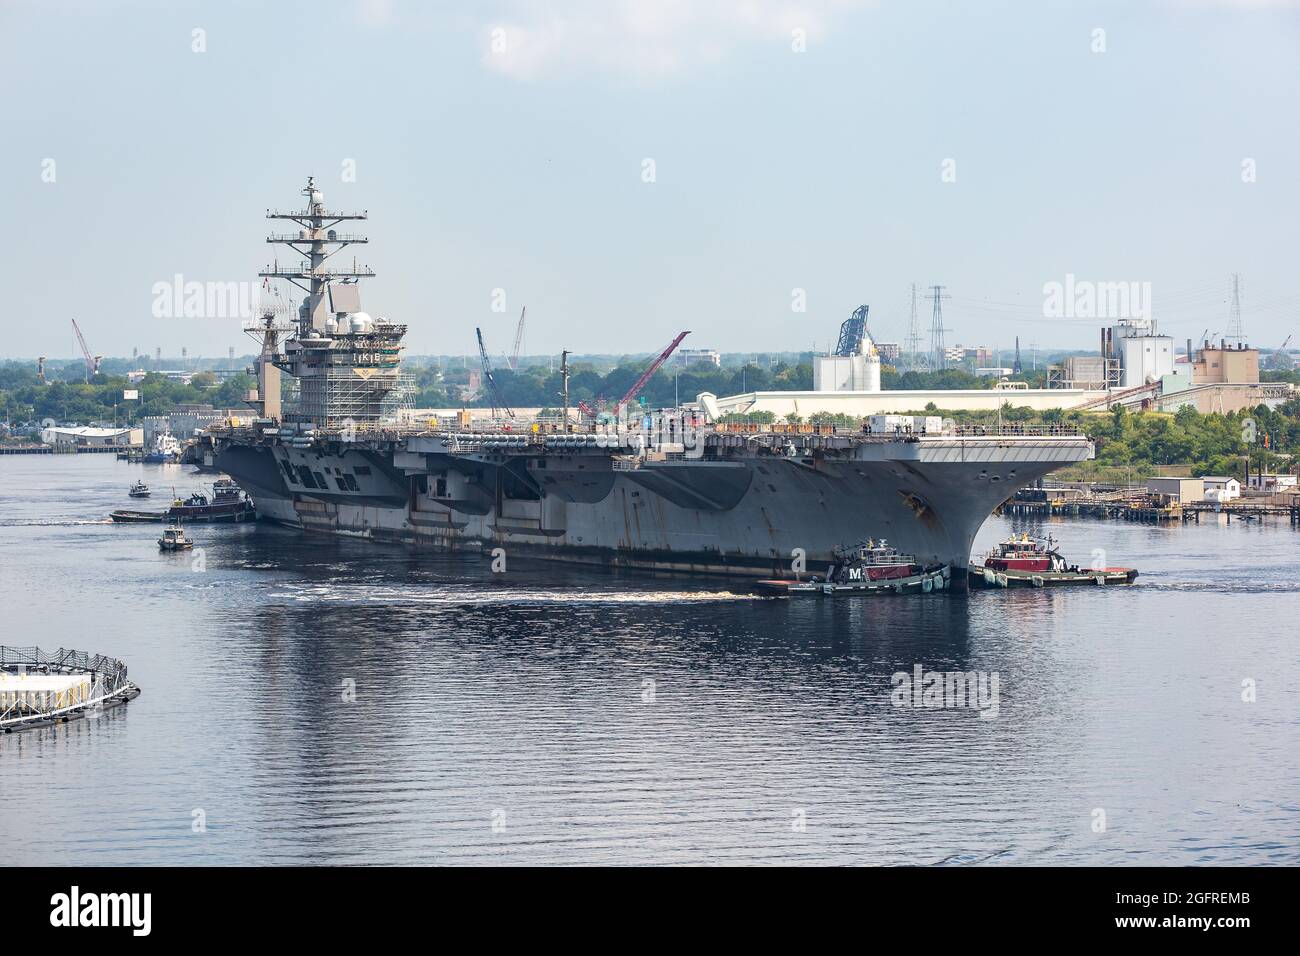 Il cantiere navale di Norfolk (NNSY) ha accolto la USS Dwight D. Eisenhower (CVN 69) il 25 agosto in anticipo rispetto alla sua disponibilità incrementale pianificata (PIA) di 13 mesi. Foto Stock